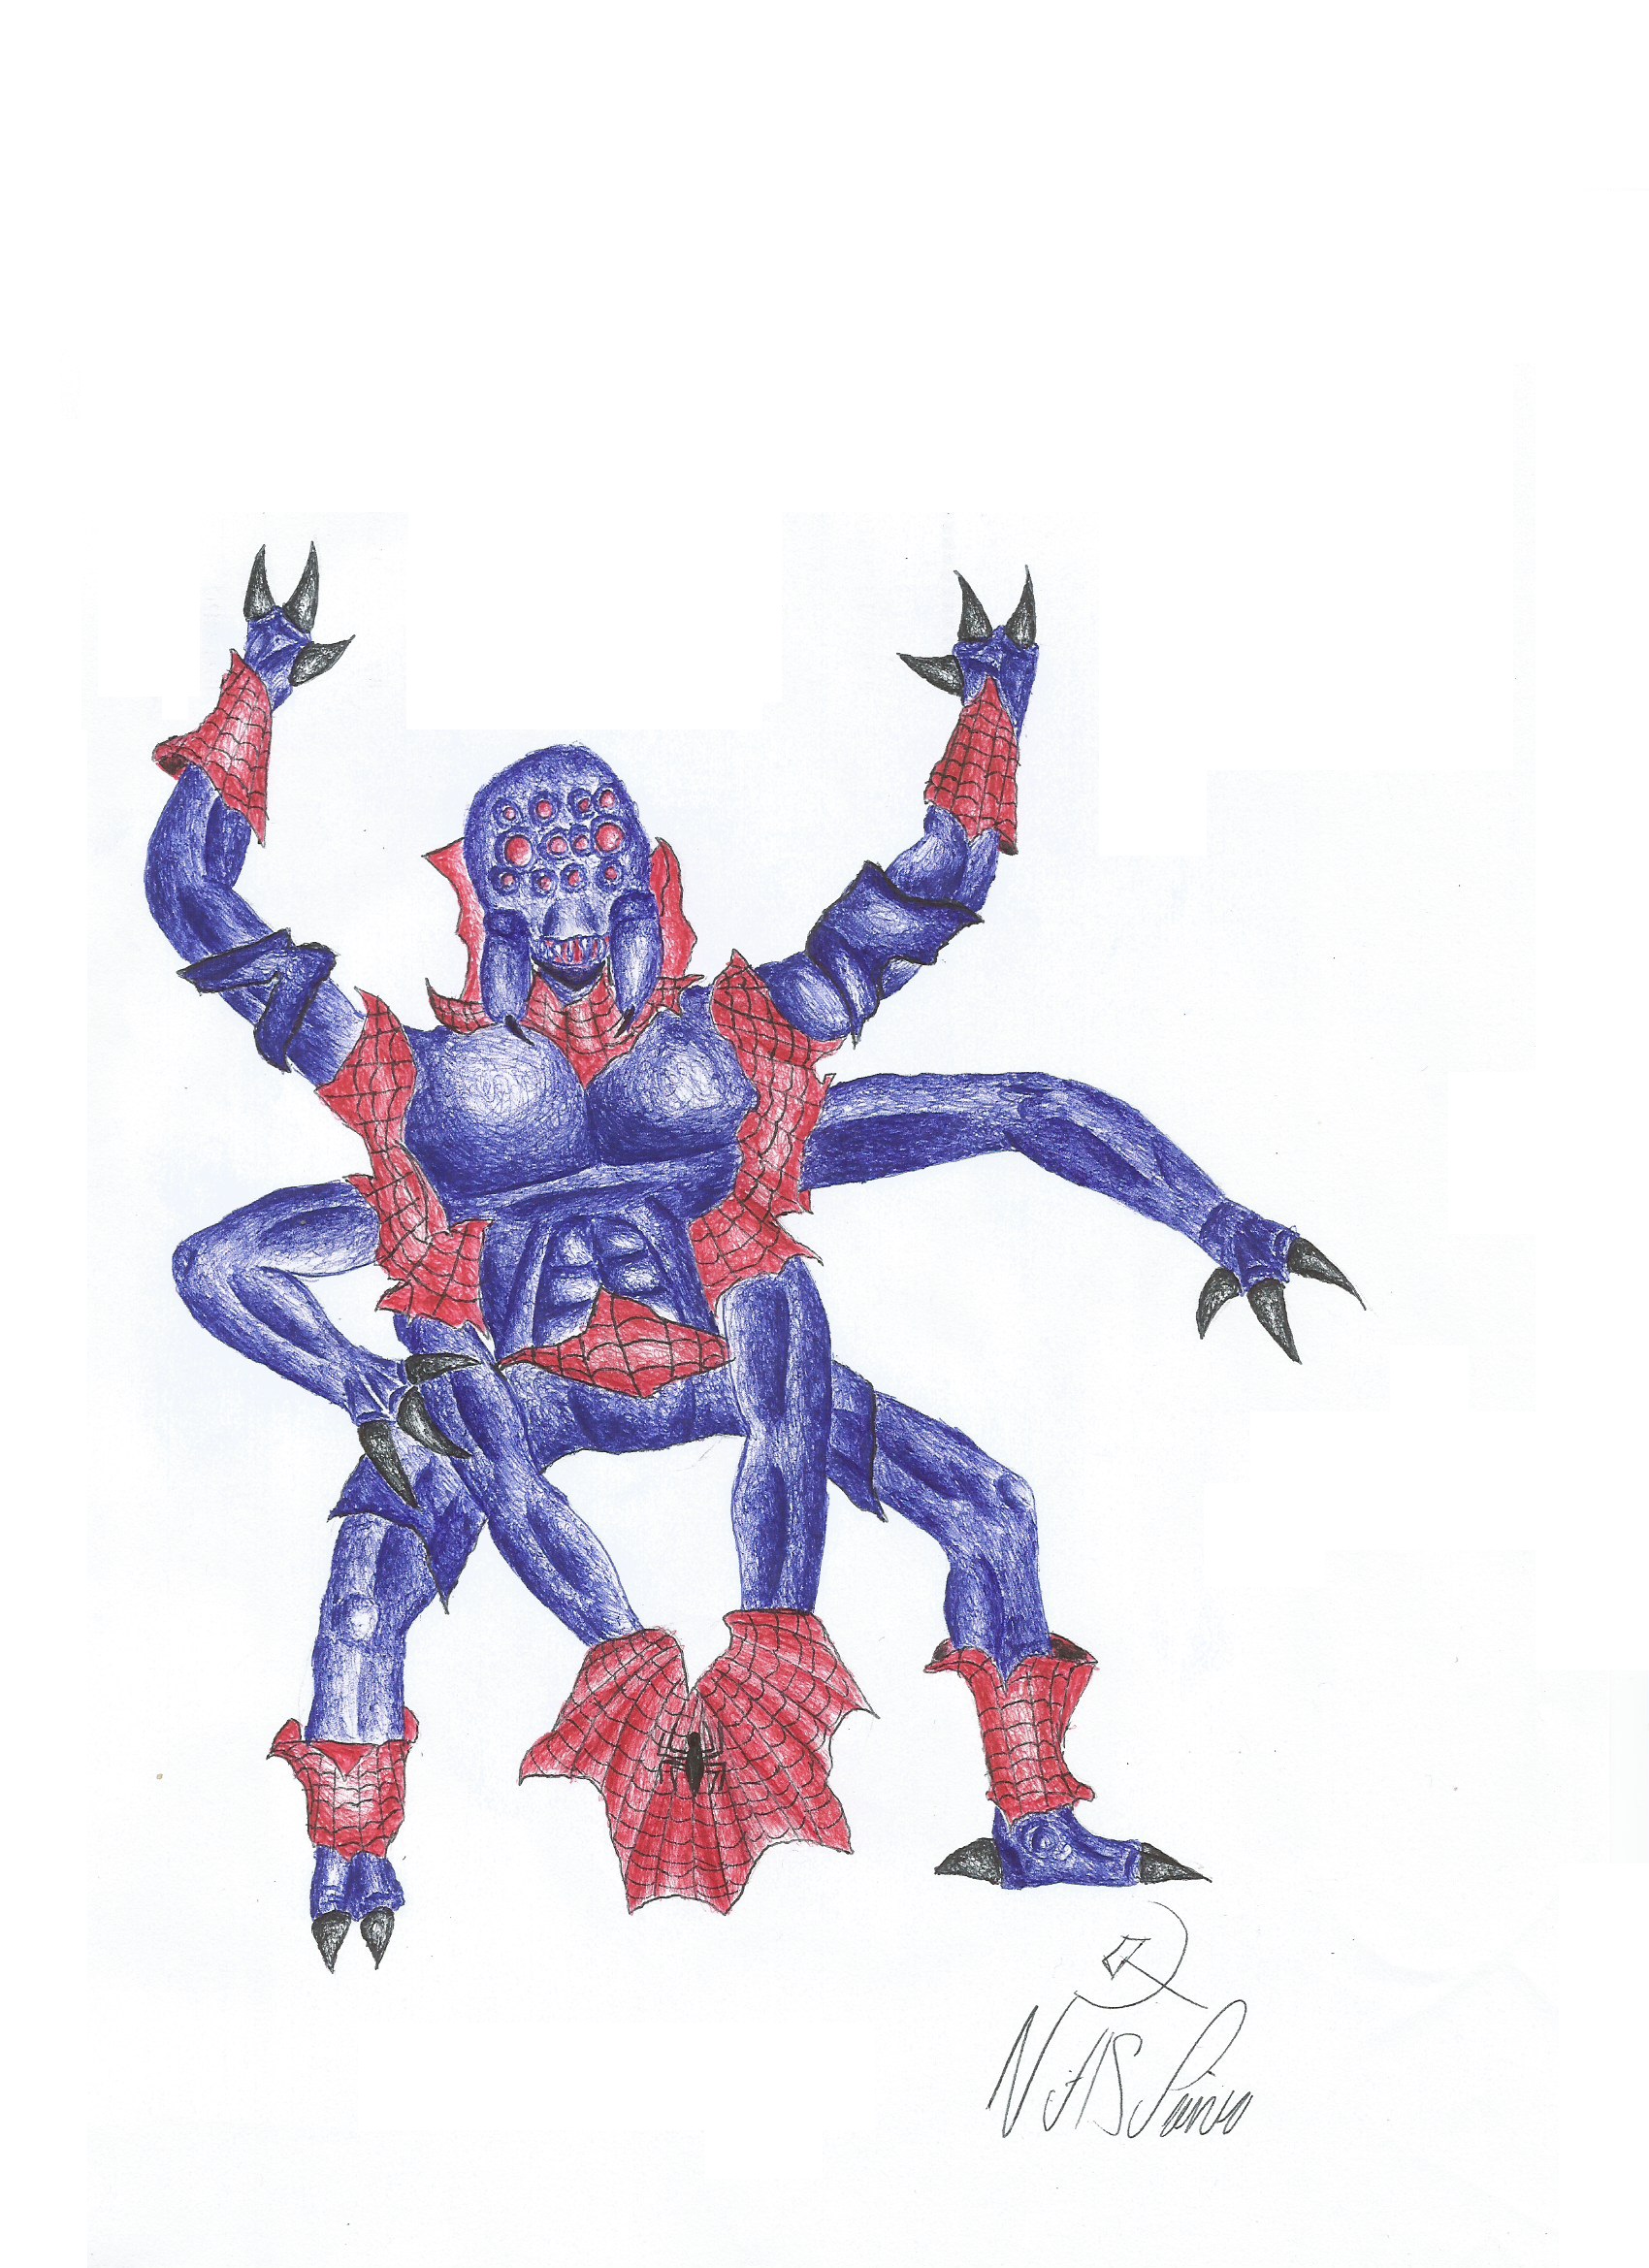 Rising of Mutant Spider-Man - Monster Spider-Man by VictorWolverine on  DeviantArt